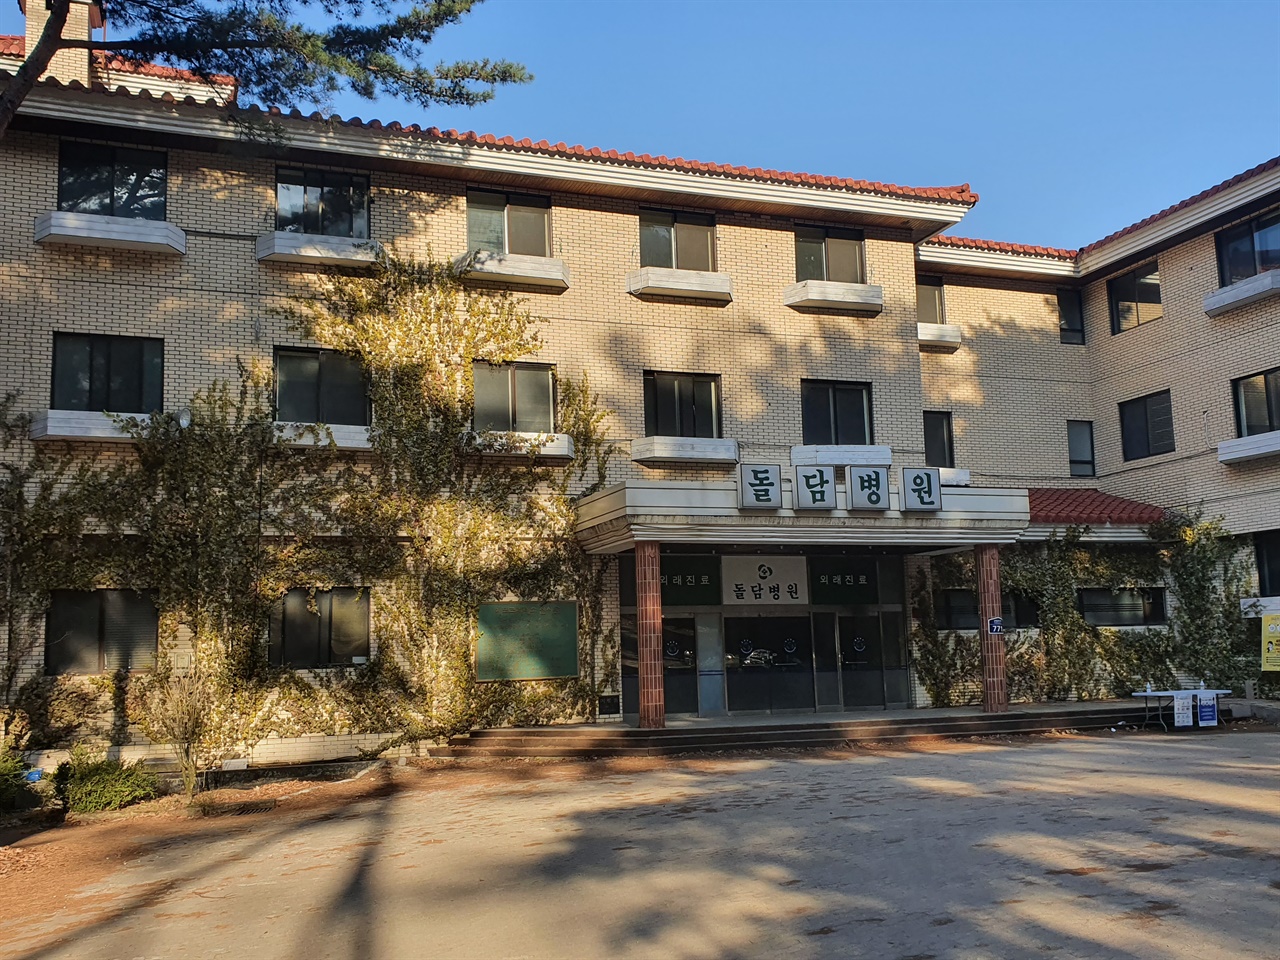 드라마 <낭만닥터 김사부>의 촬영지로 쓰였던 돌담병원은 예전에는 포천 가족호텔로 쓰였다고 한다.